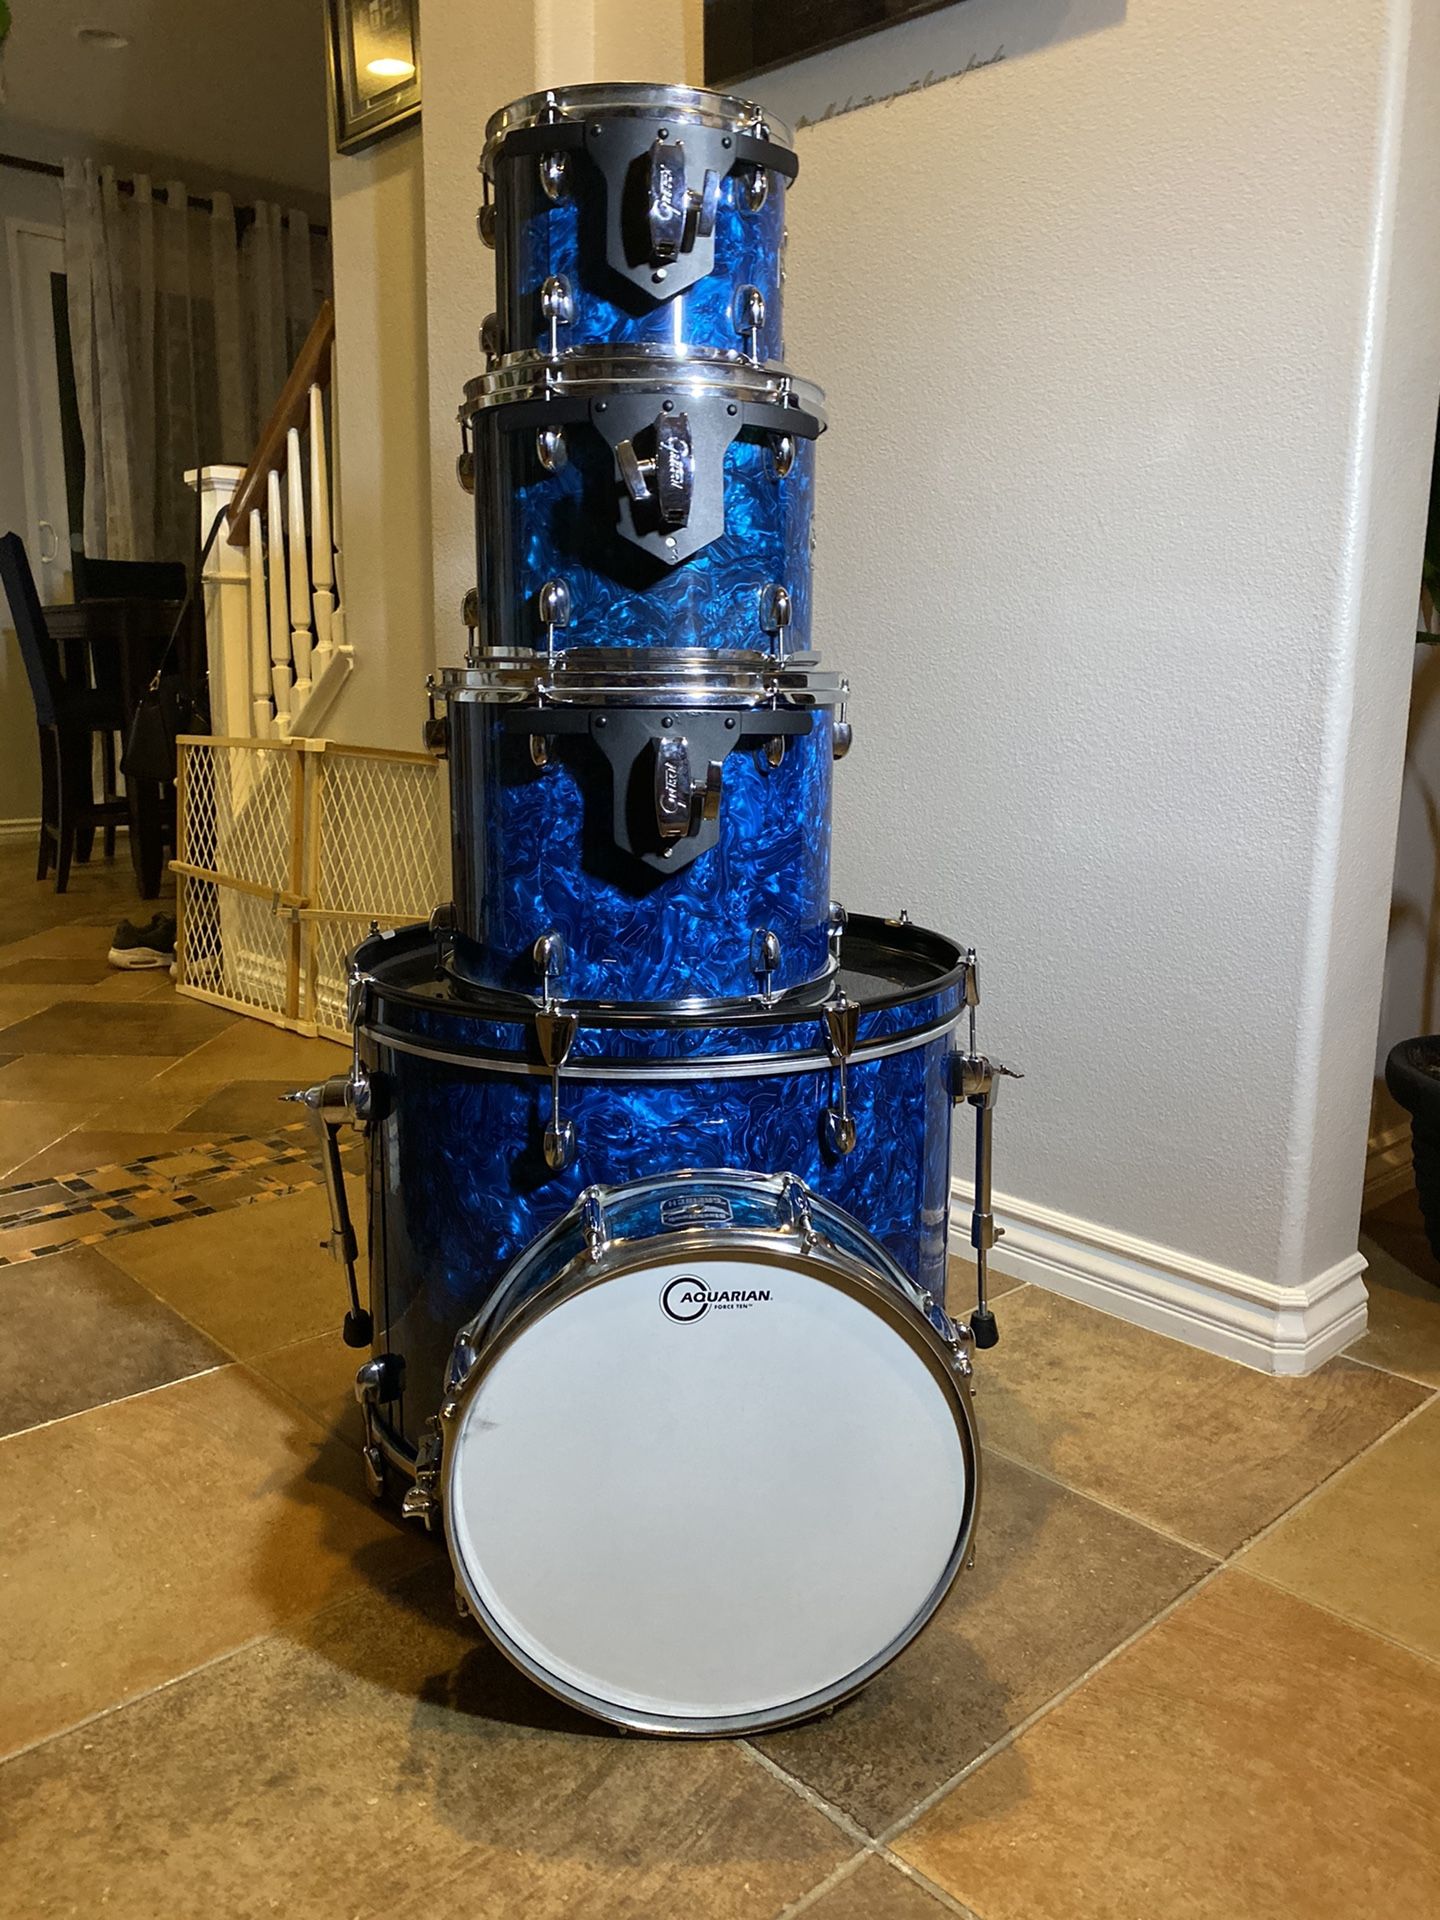 Gretsch Blackhawk drum kit